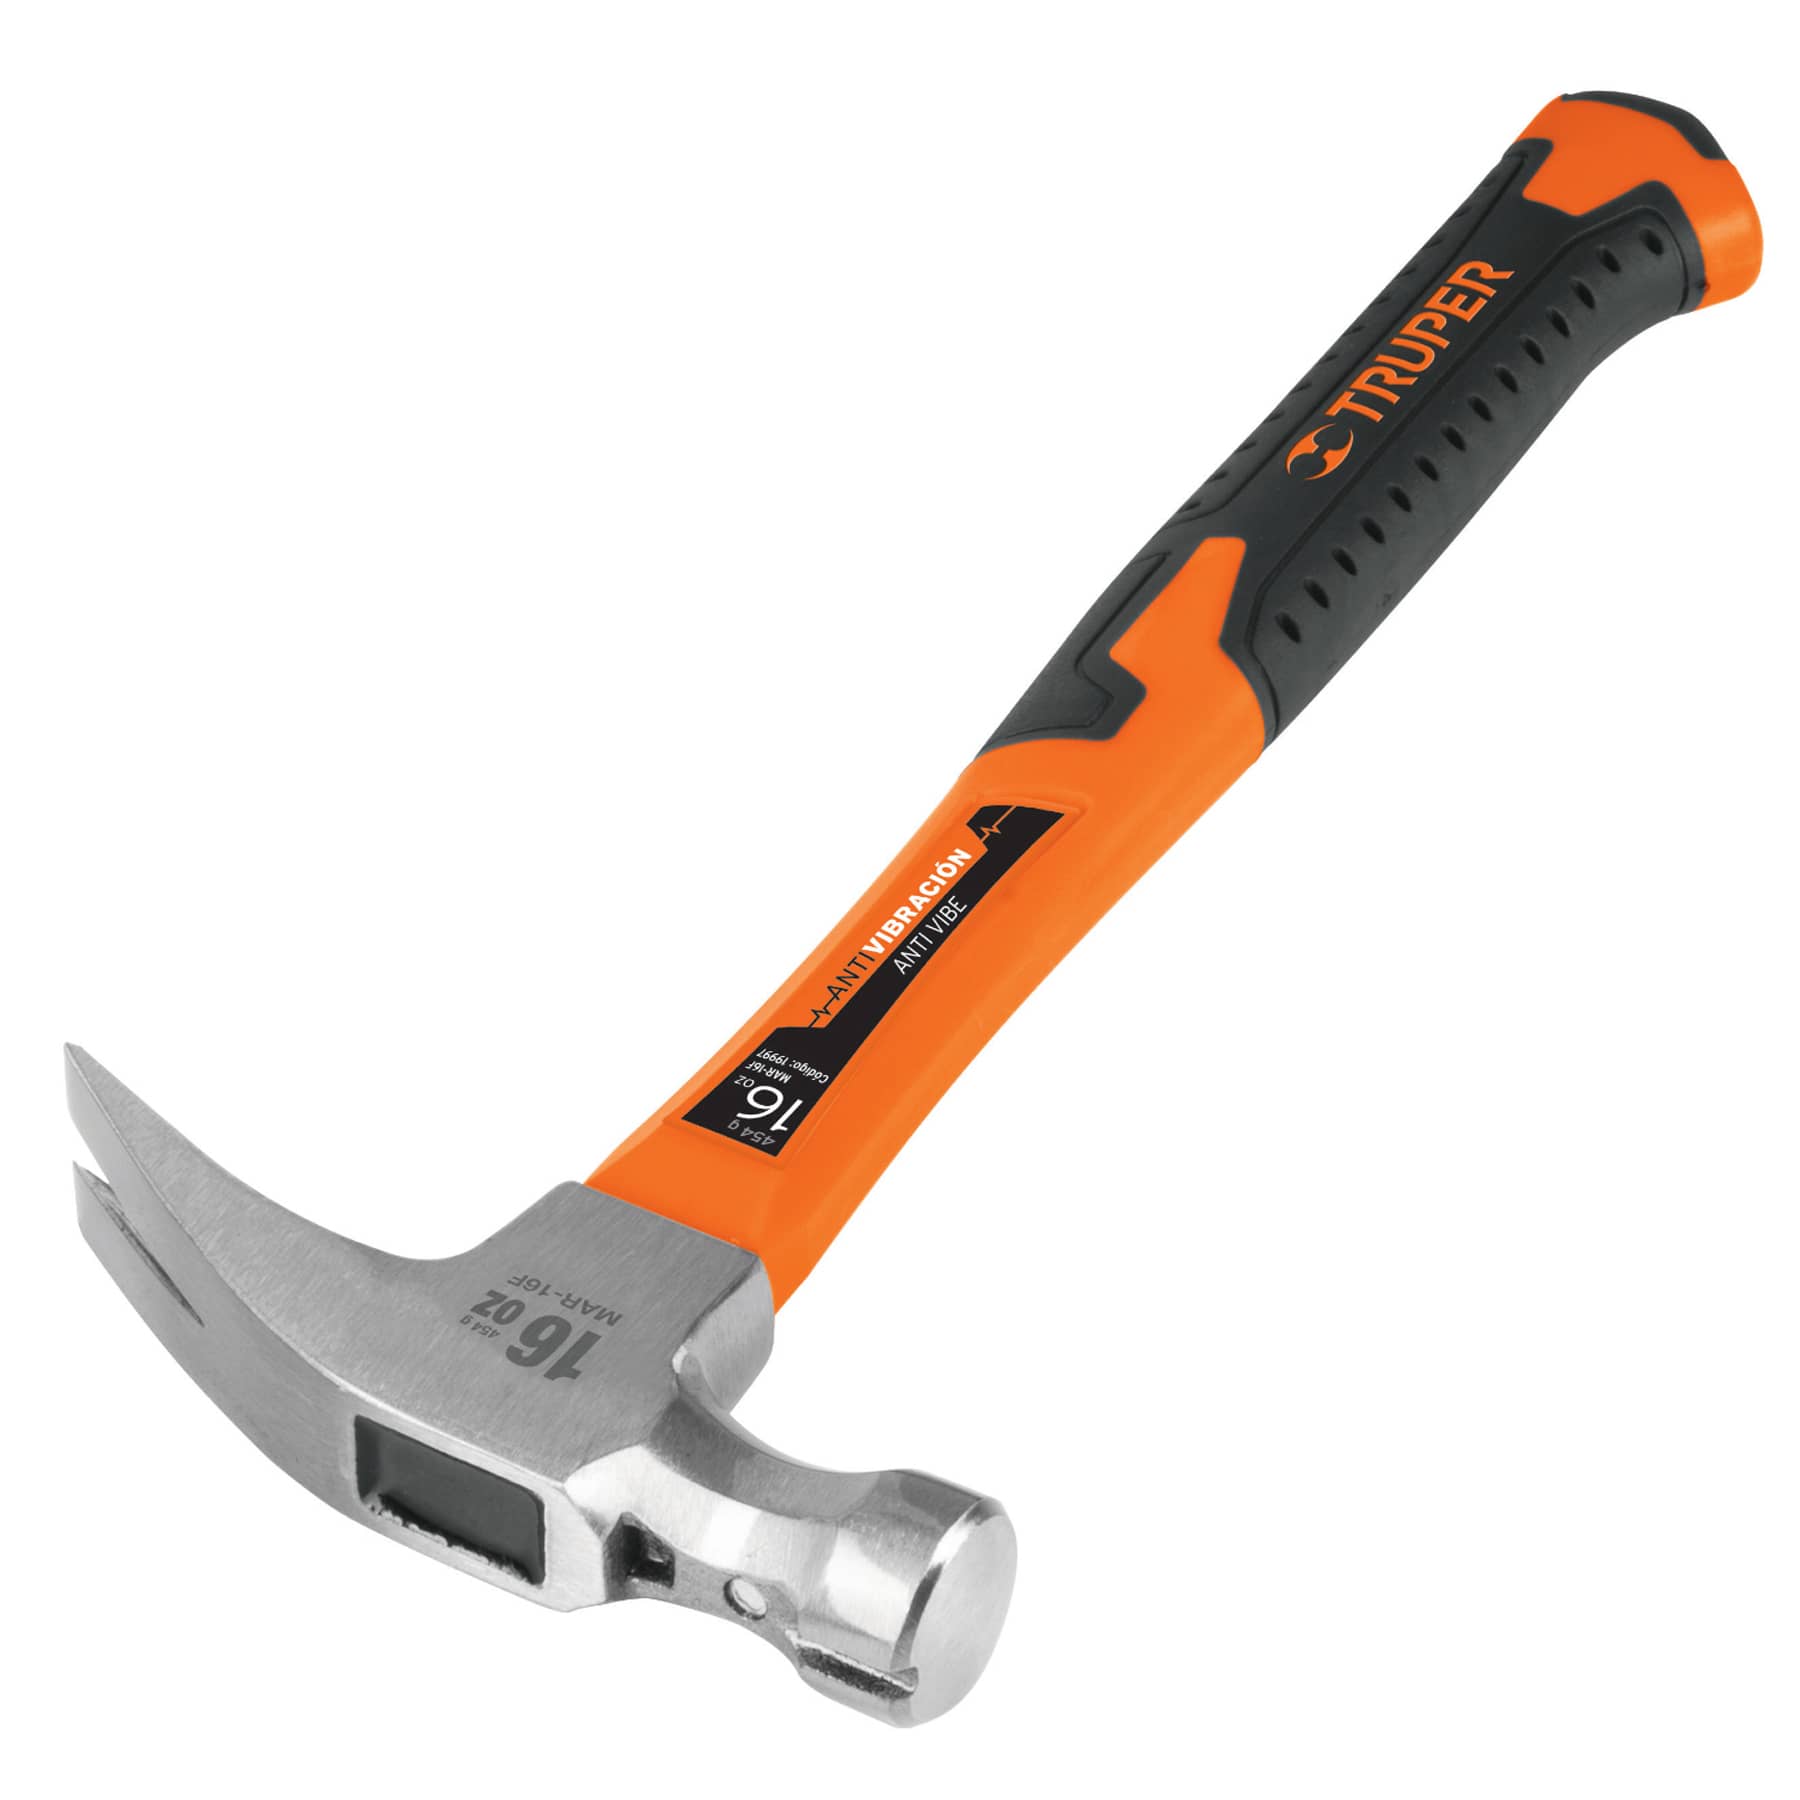 Ya tienes en tu caja de herramientas un martillo carpintero mango de  plástico?✓ - Aprovecha y adquiere el tuyo en @grupoferremayor - Te…